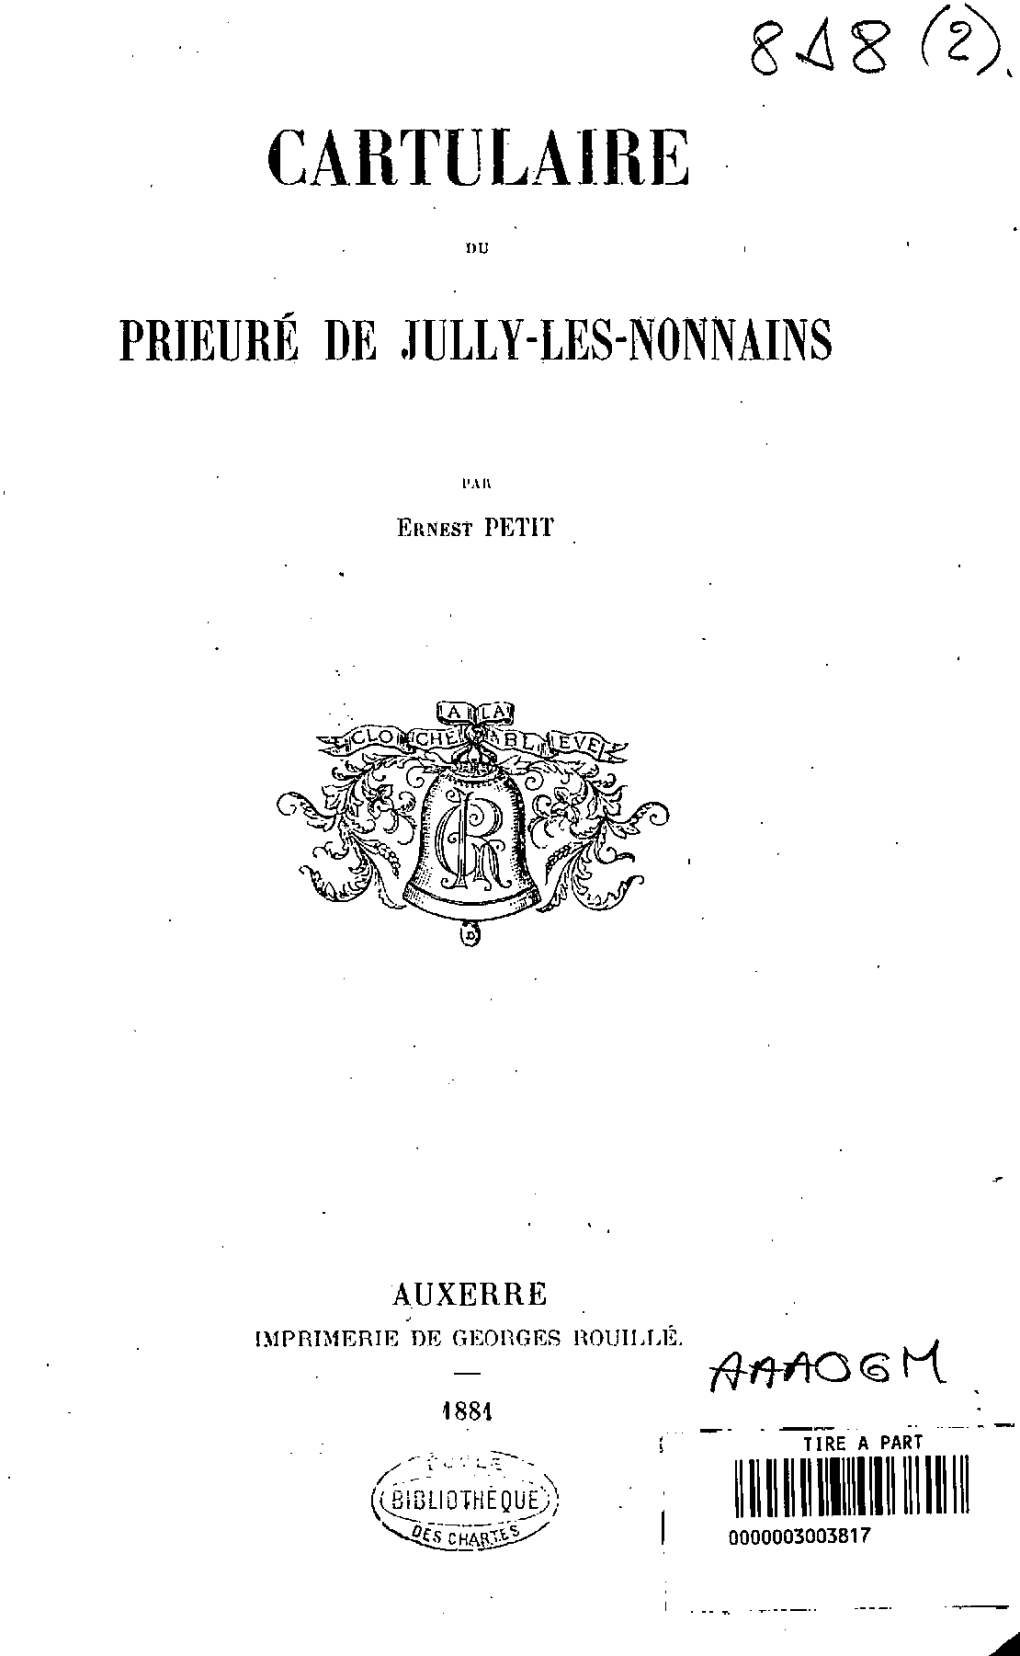 Cartulaire Du Prieure De Jully-Les-Nonnains